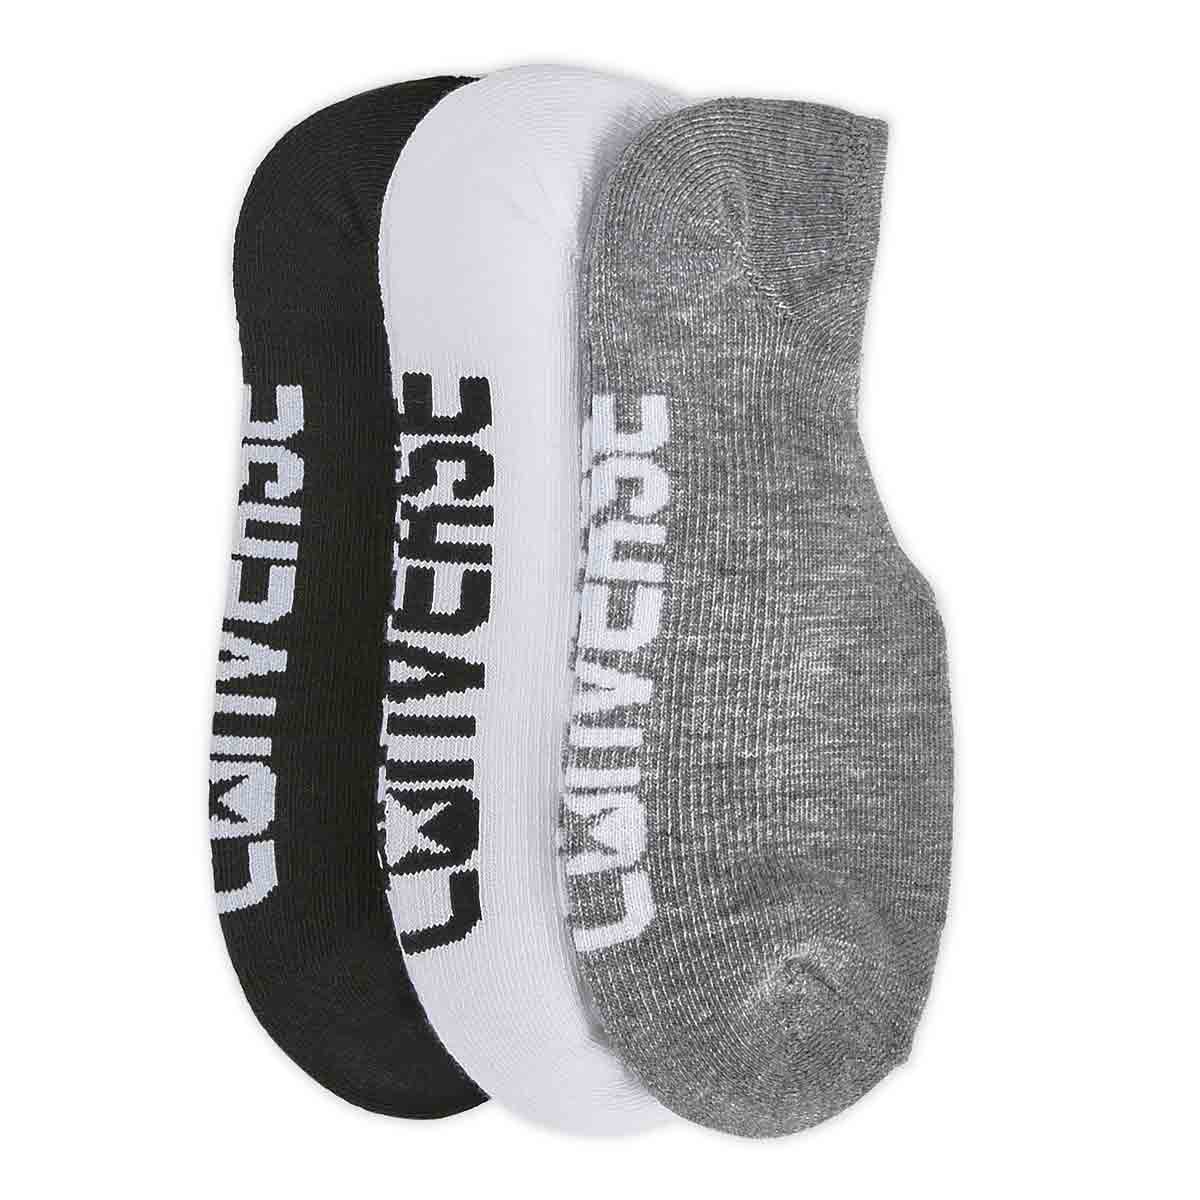 Socquettes MADE FOR CHUCKS, logo multi, femmes-3p